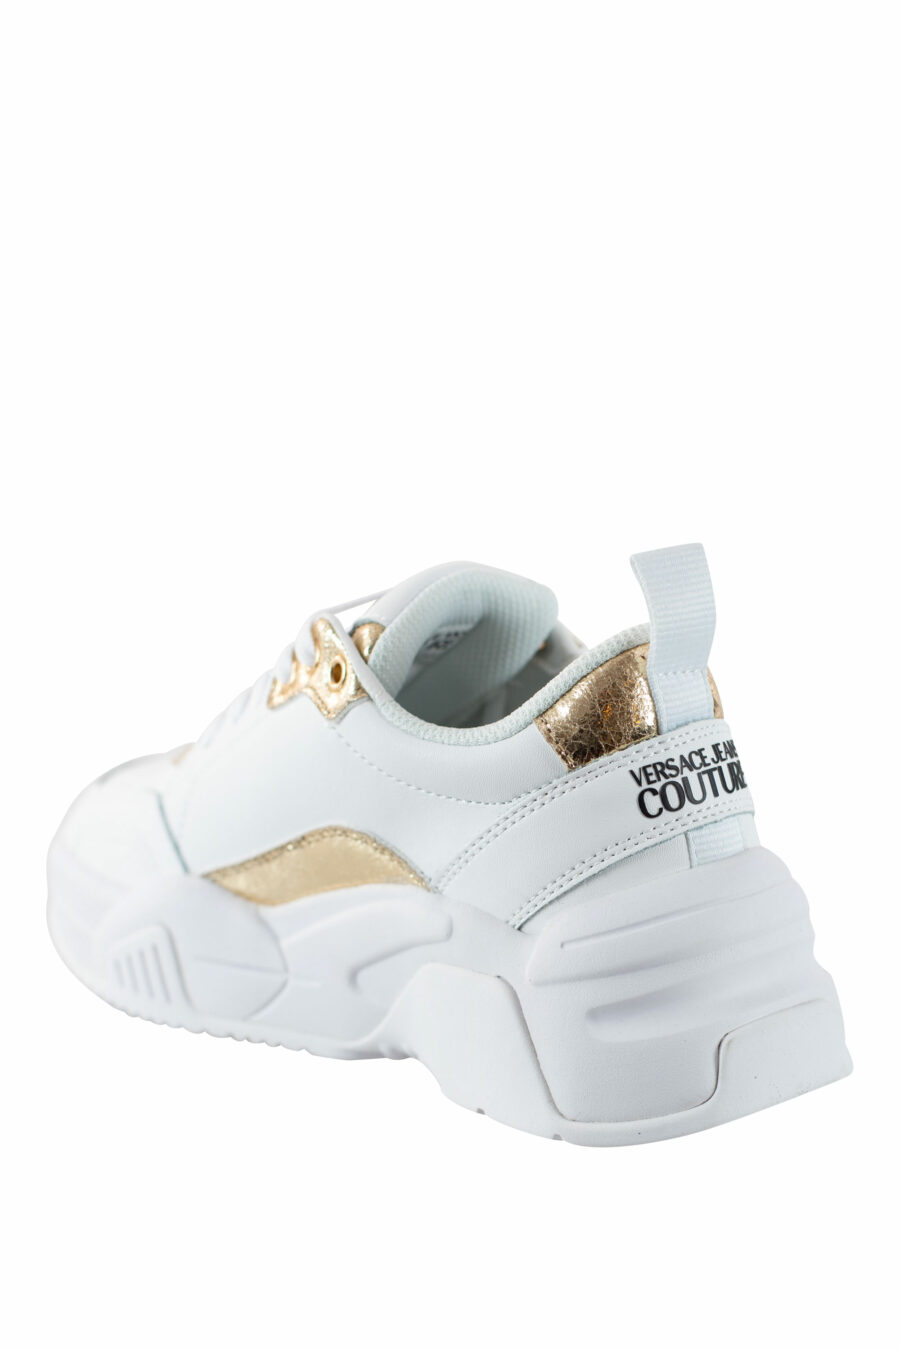 Zapatillas blancas con dorado "stargaze" - IMG 4500